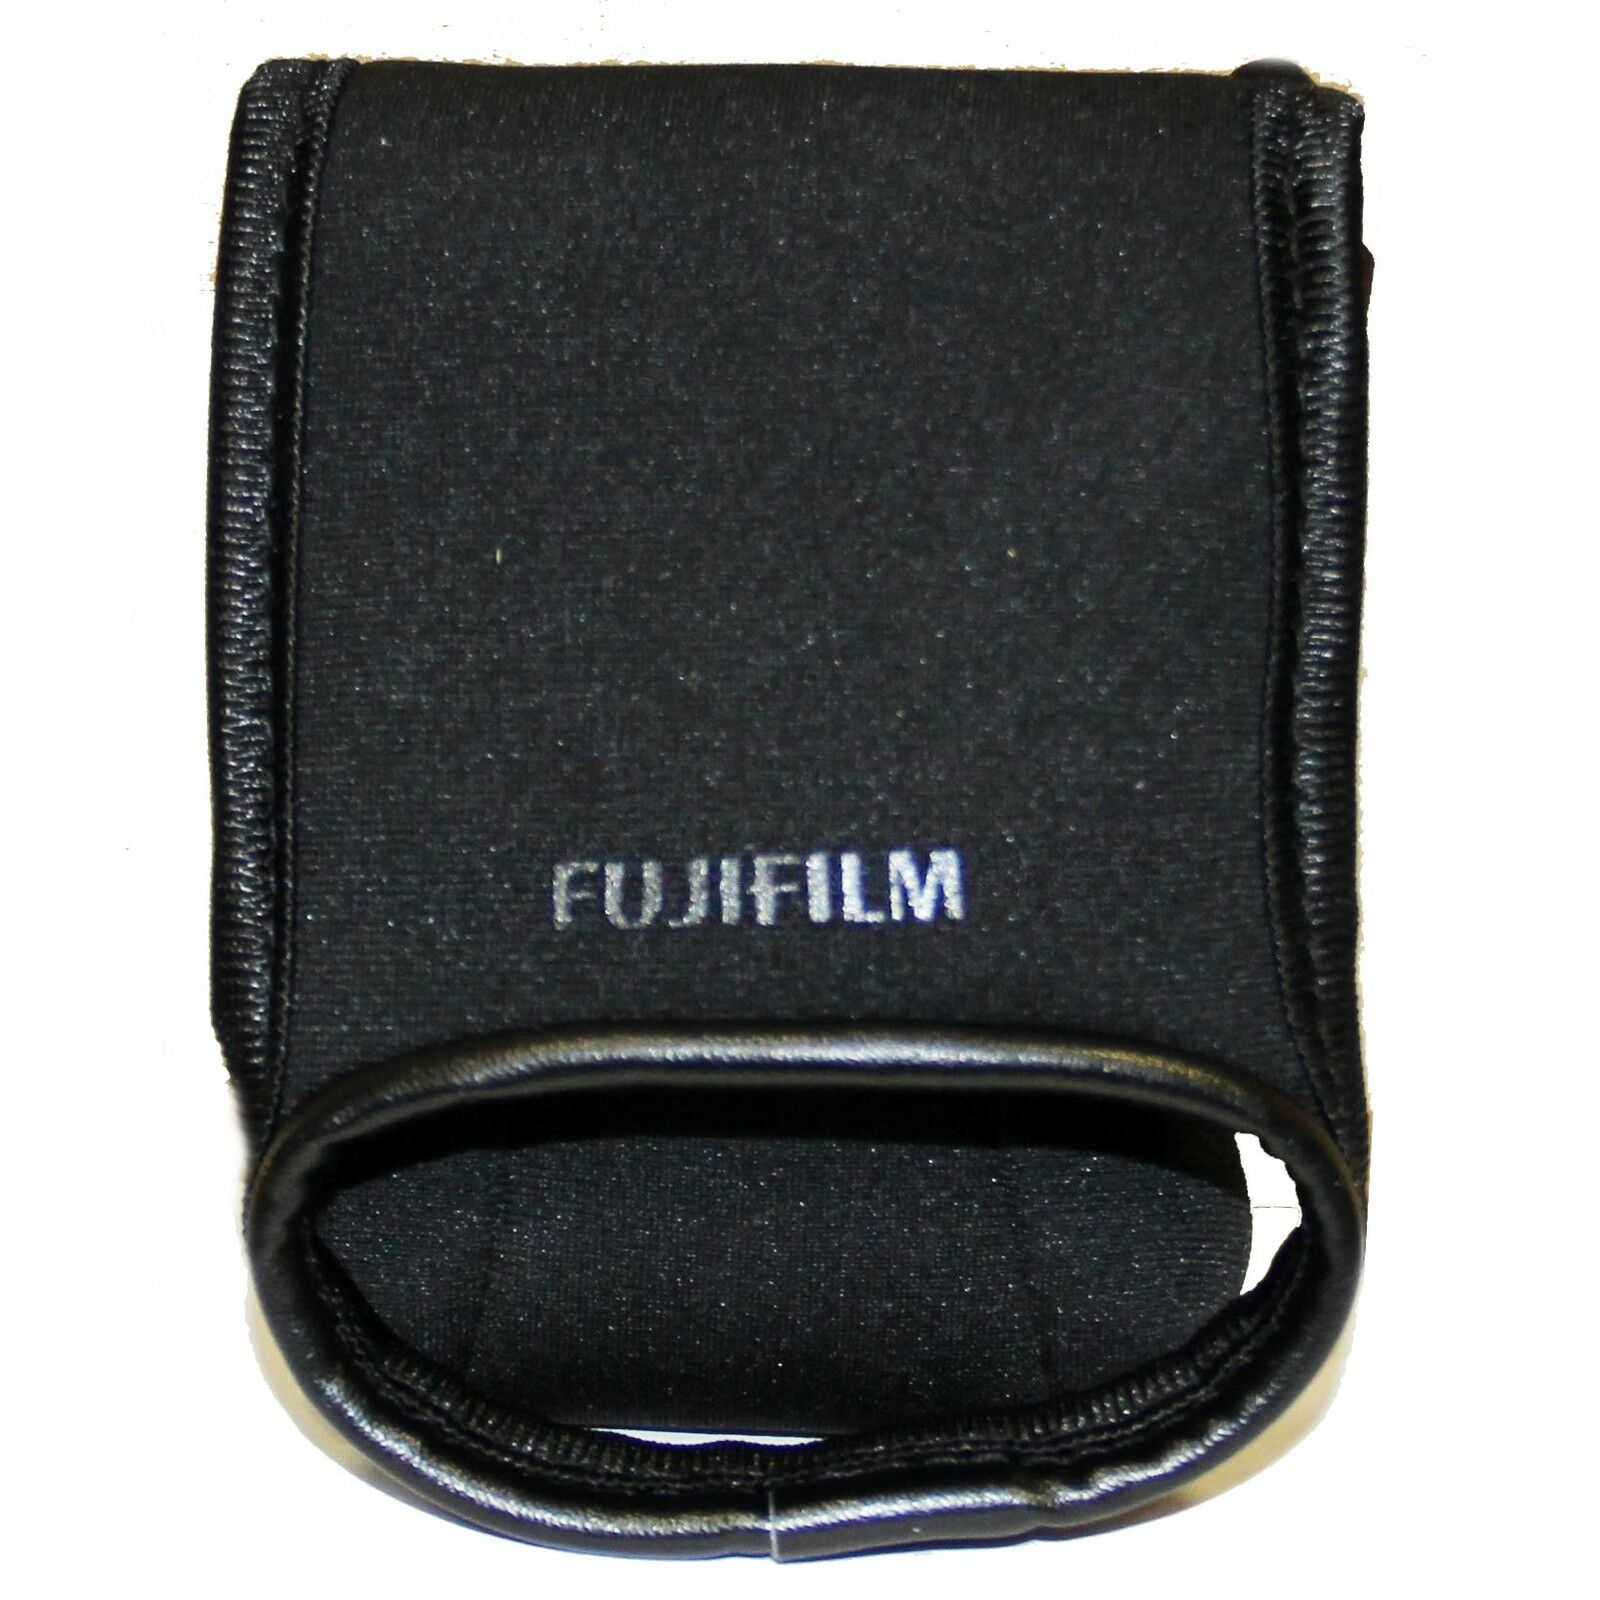 Fujifilm Neoprene Action Case (black)